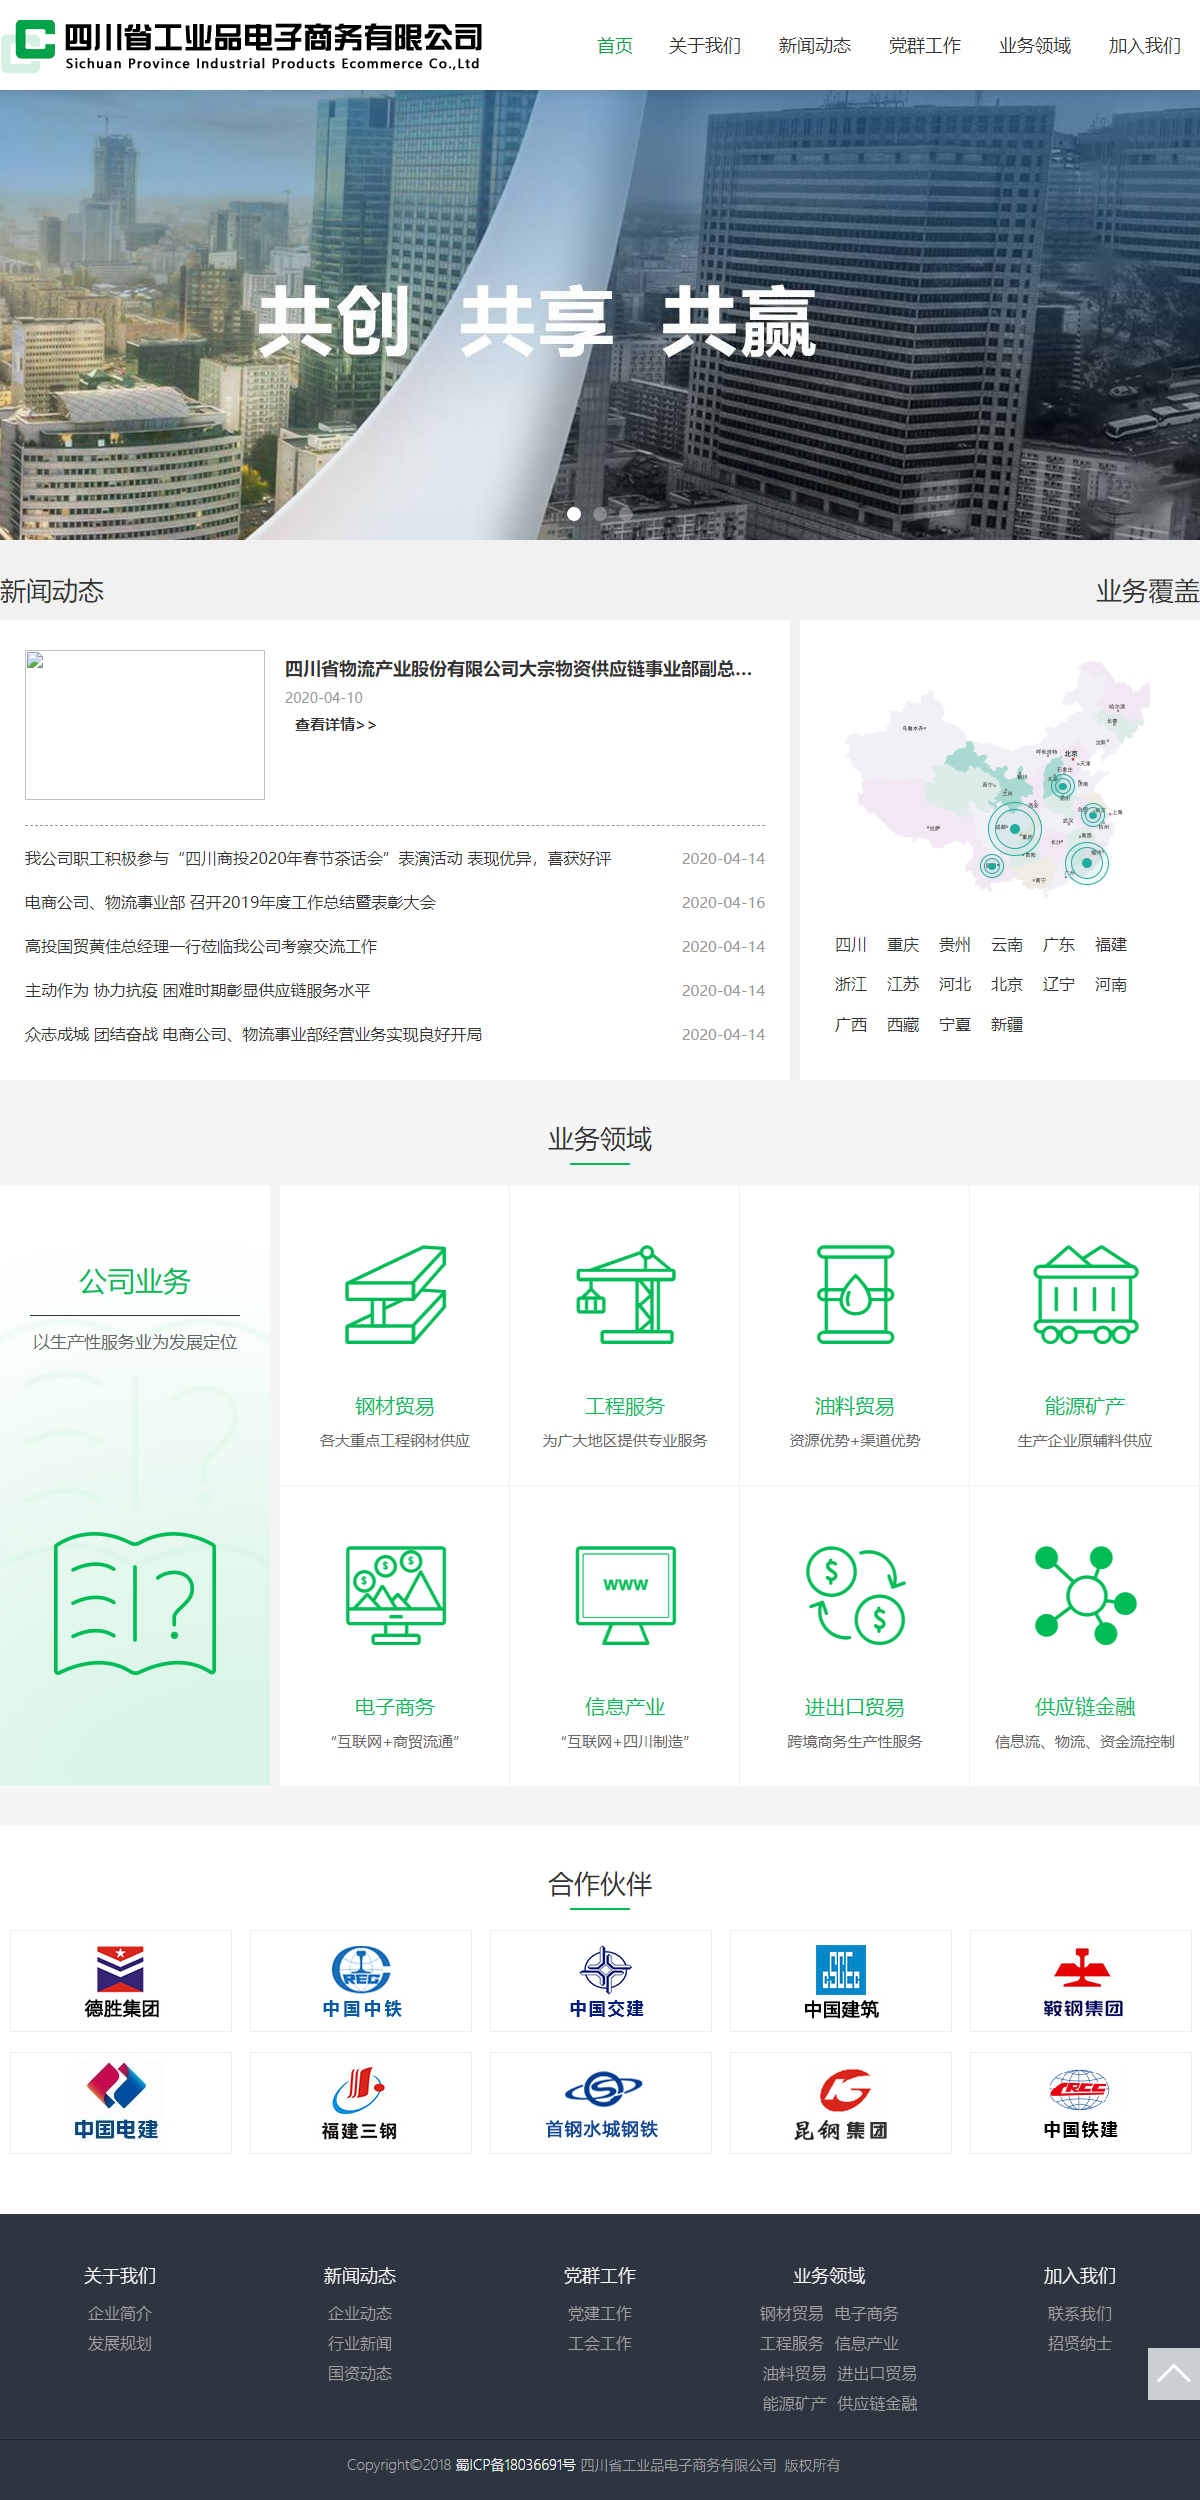 四川省工业品电子商务有限公司网站案例